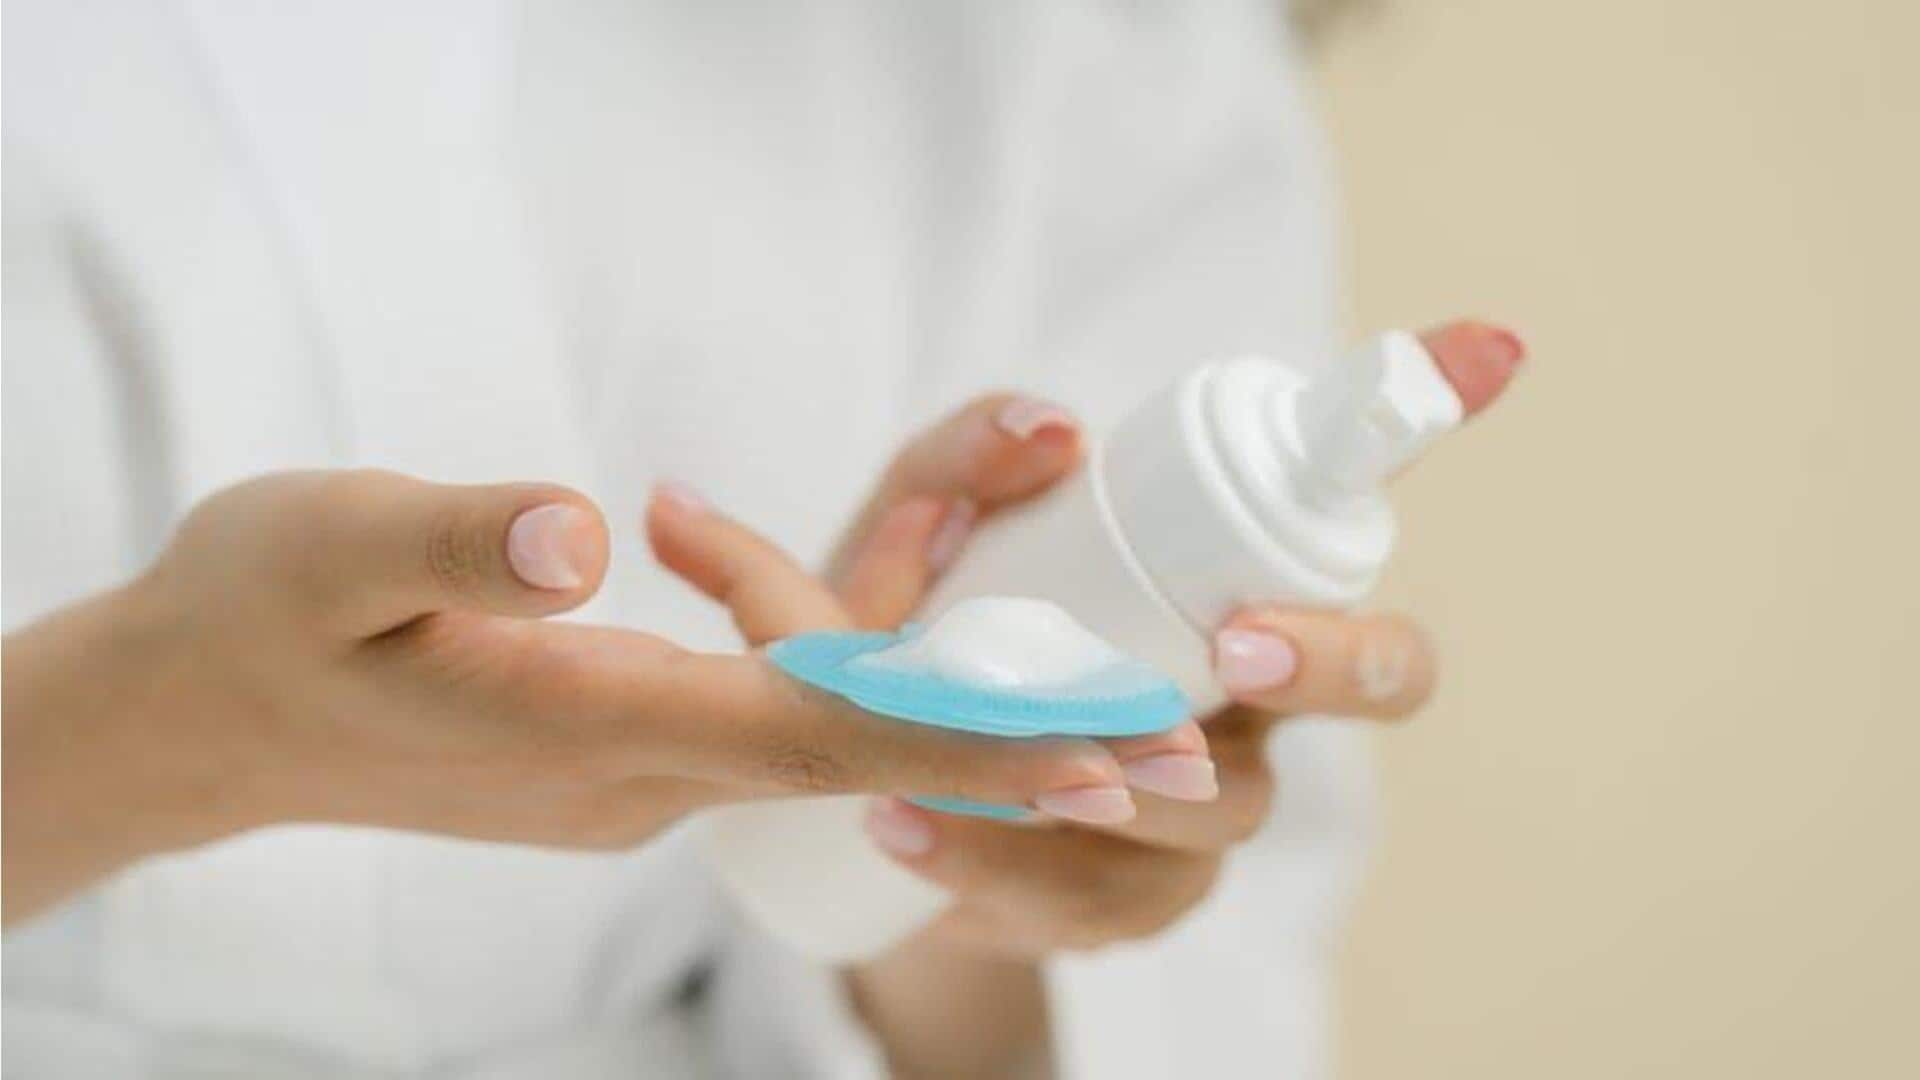 Pakar memperingatkan bahan-bahan berbahaya yang biasa ditemukan dalam produk perawatan kulit